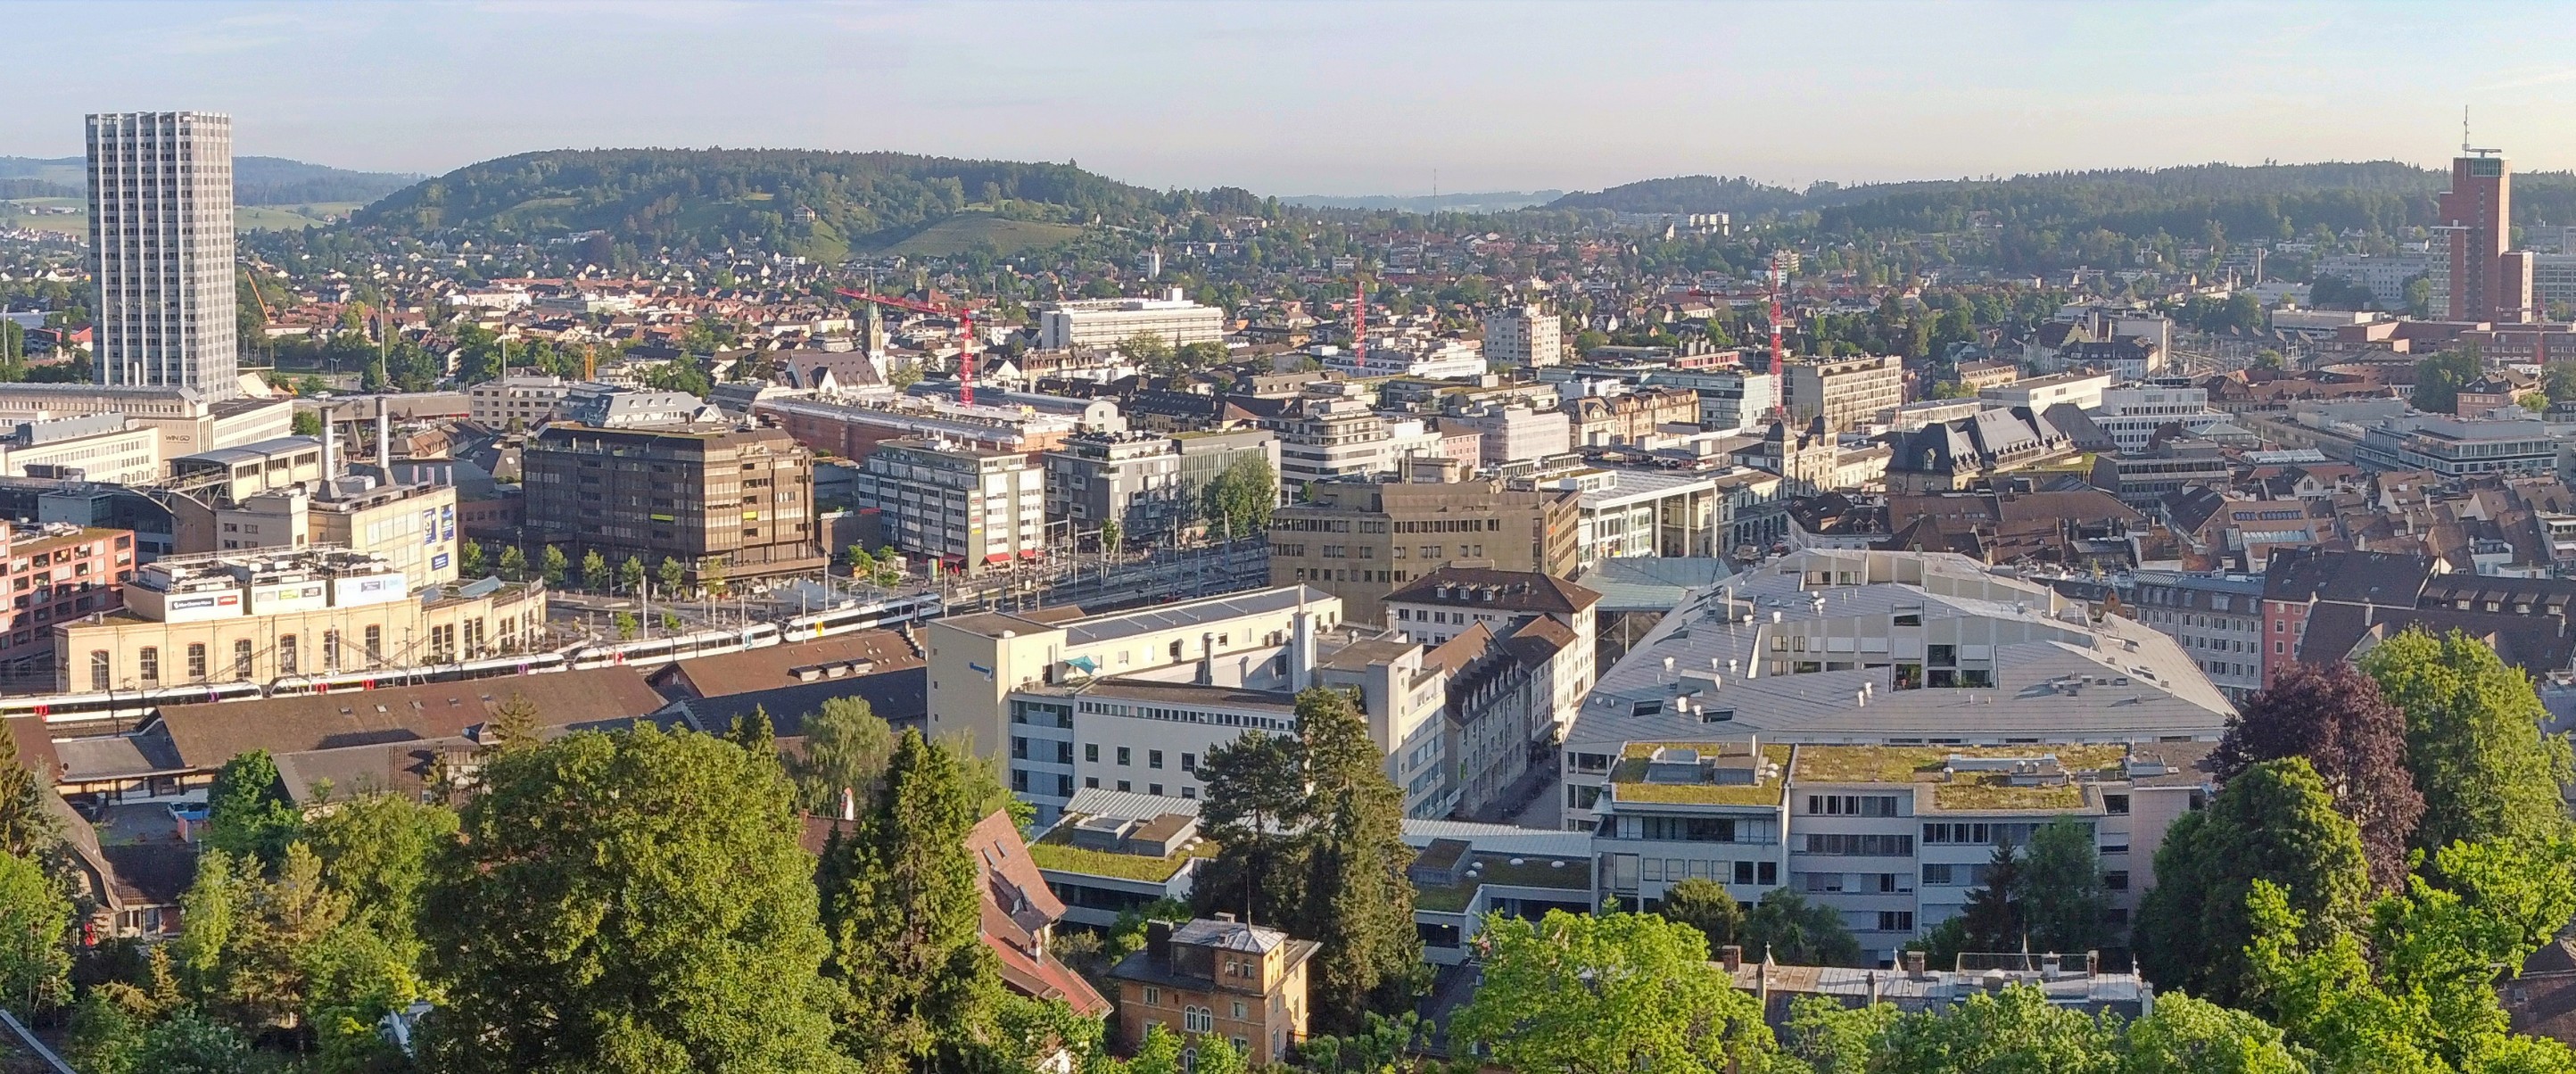 La sede di Vontobel nella città di Winterthur - Panorama sulla città di Winterthur